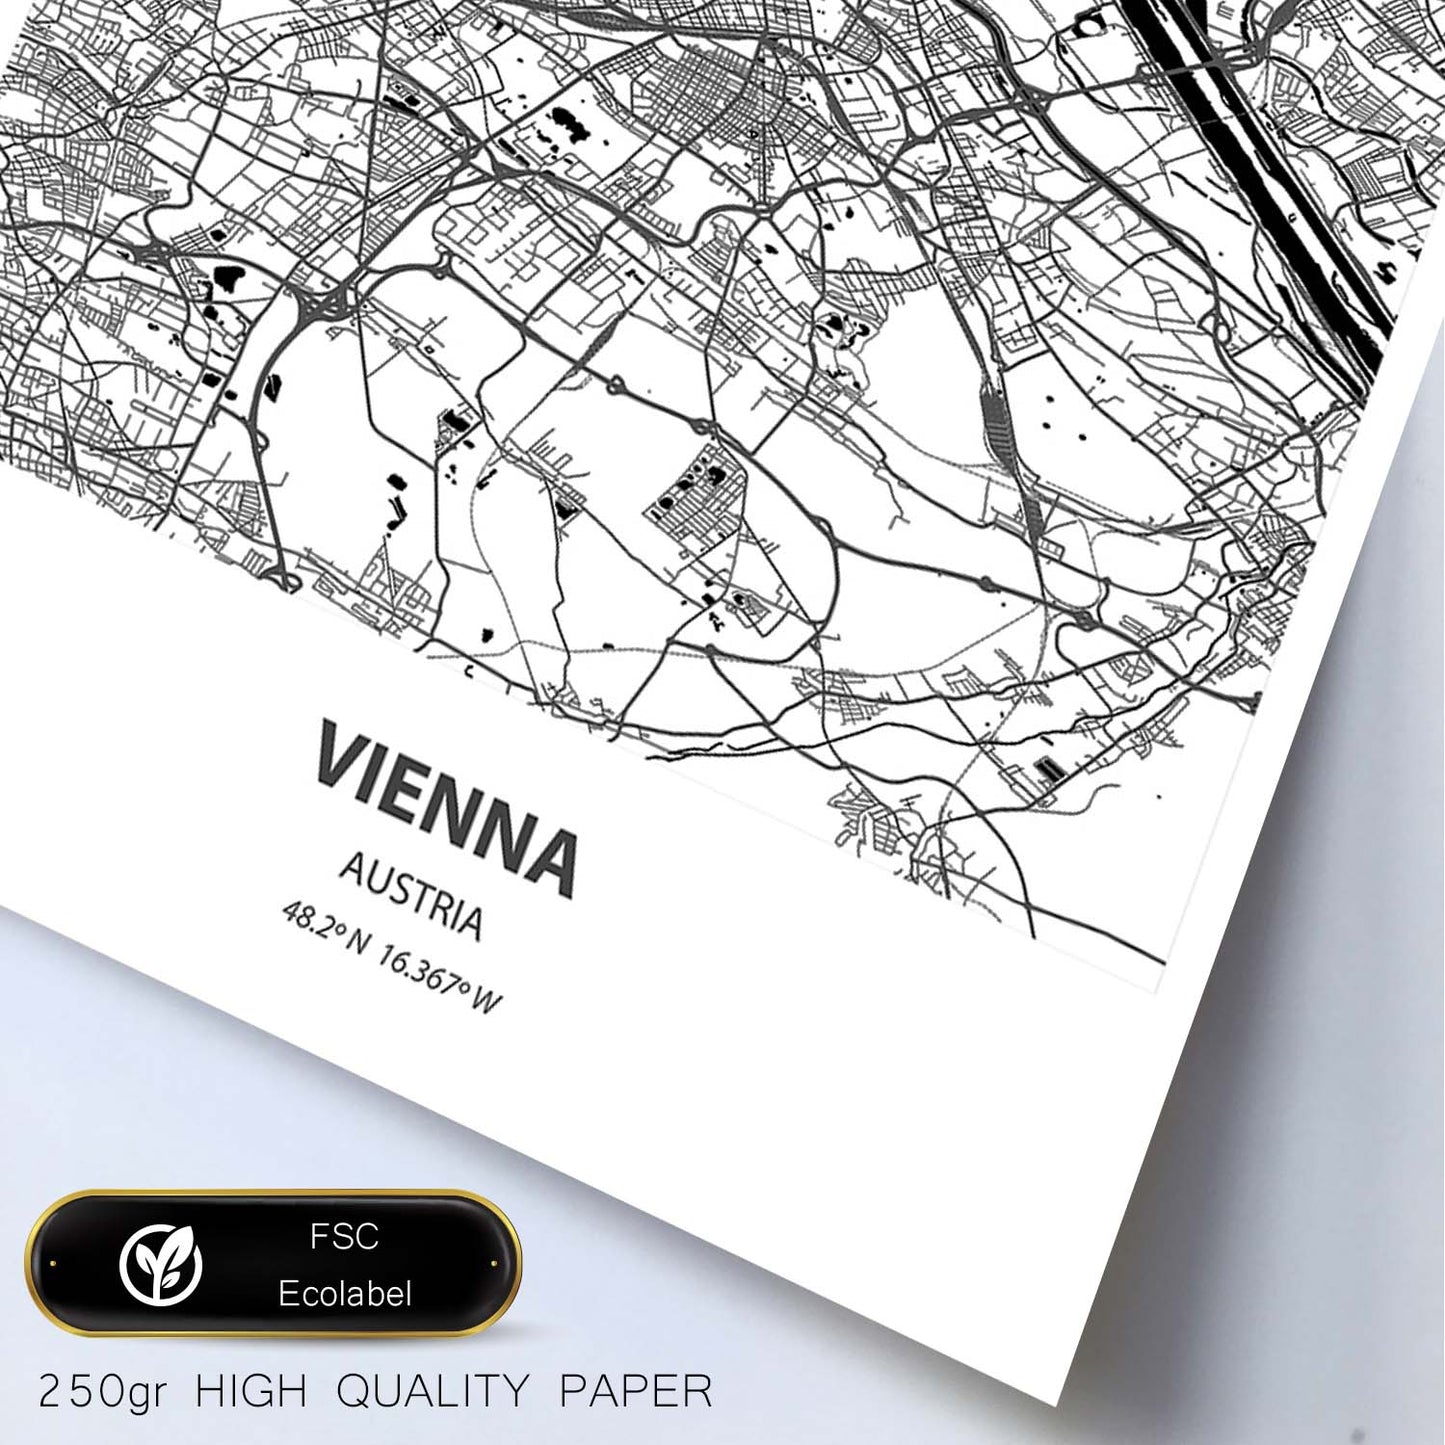 Poster con mapa de Vienna - Austria. Láminas de ciudades de Europa con mares y ríos en color negro.-Artwork-Nacnic-Nacnic Estudio SL